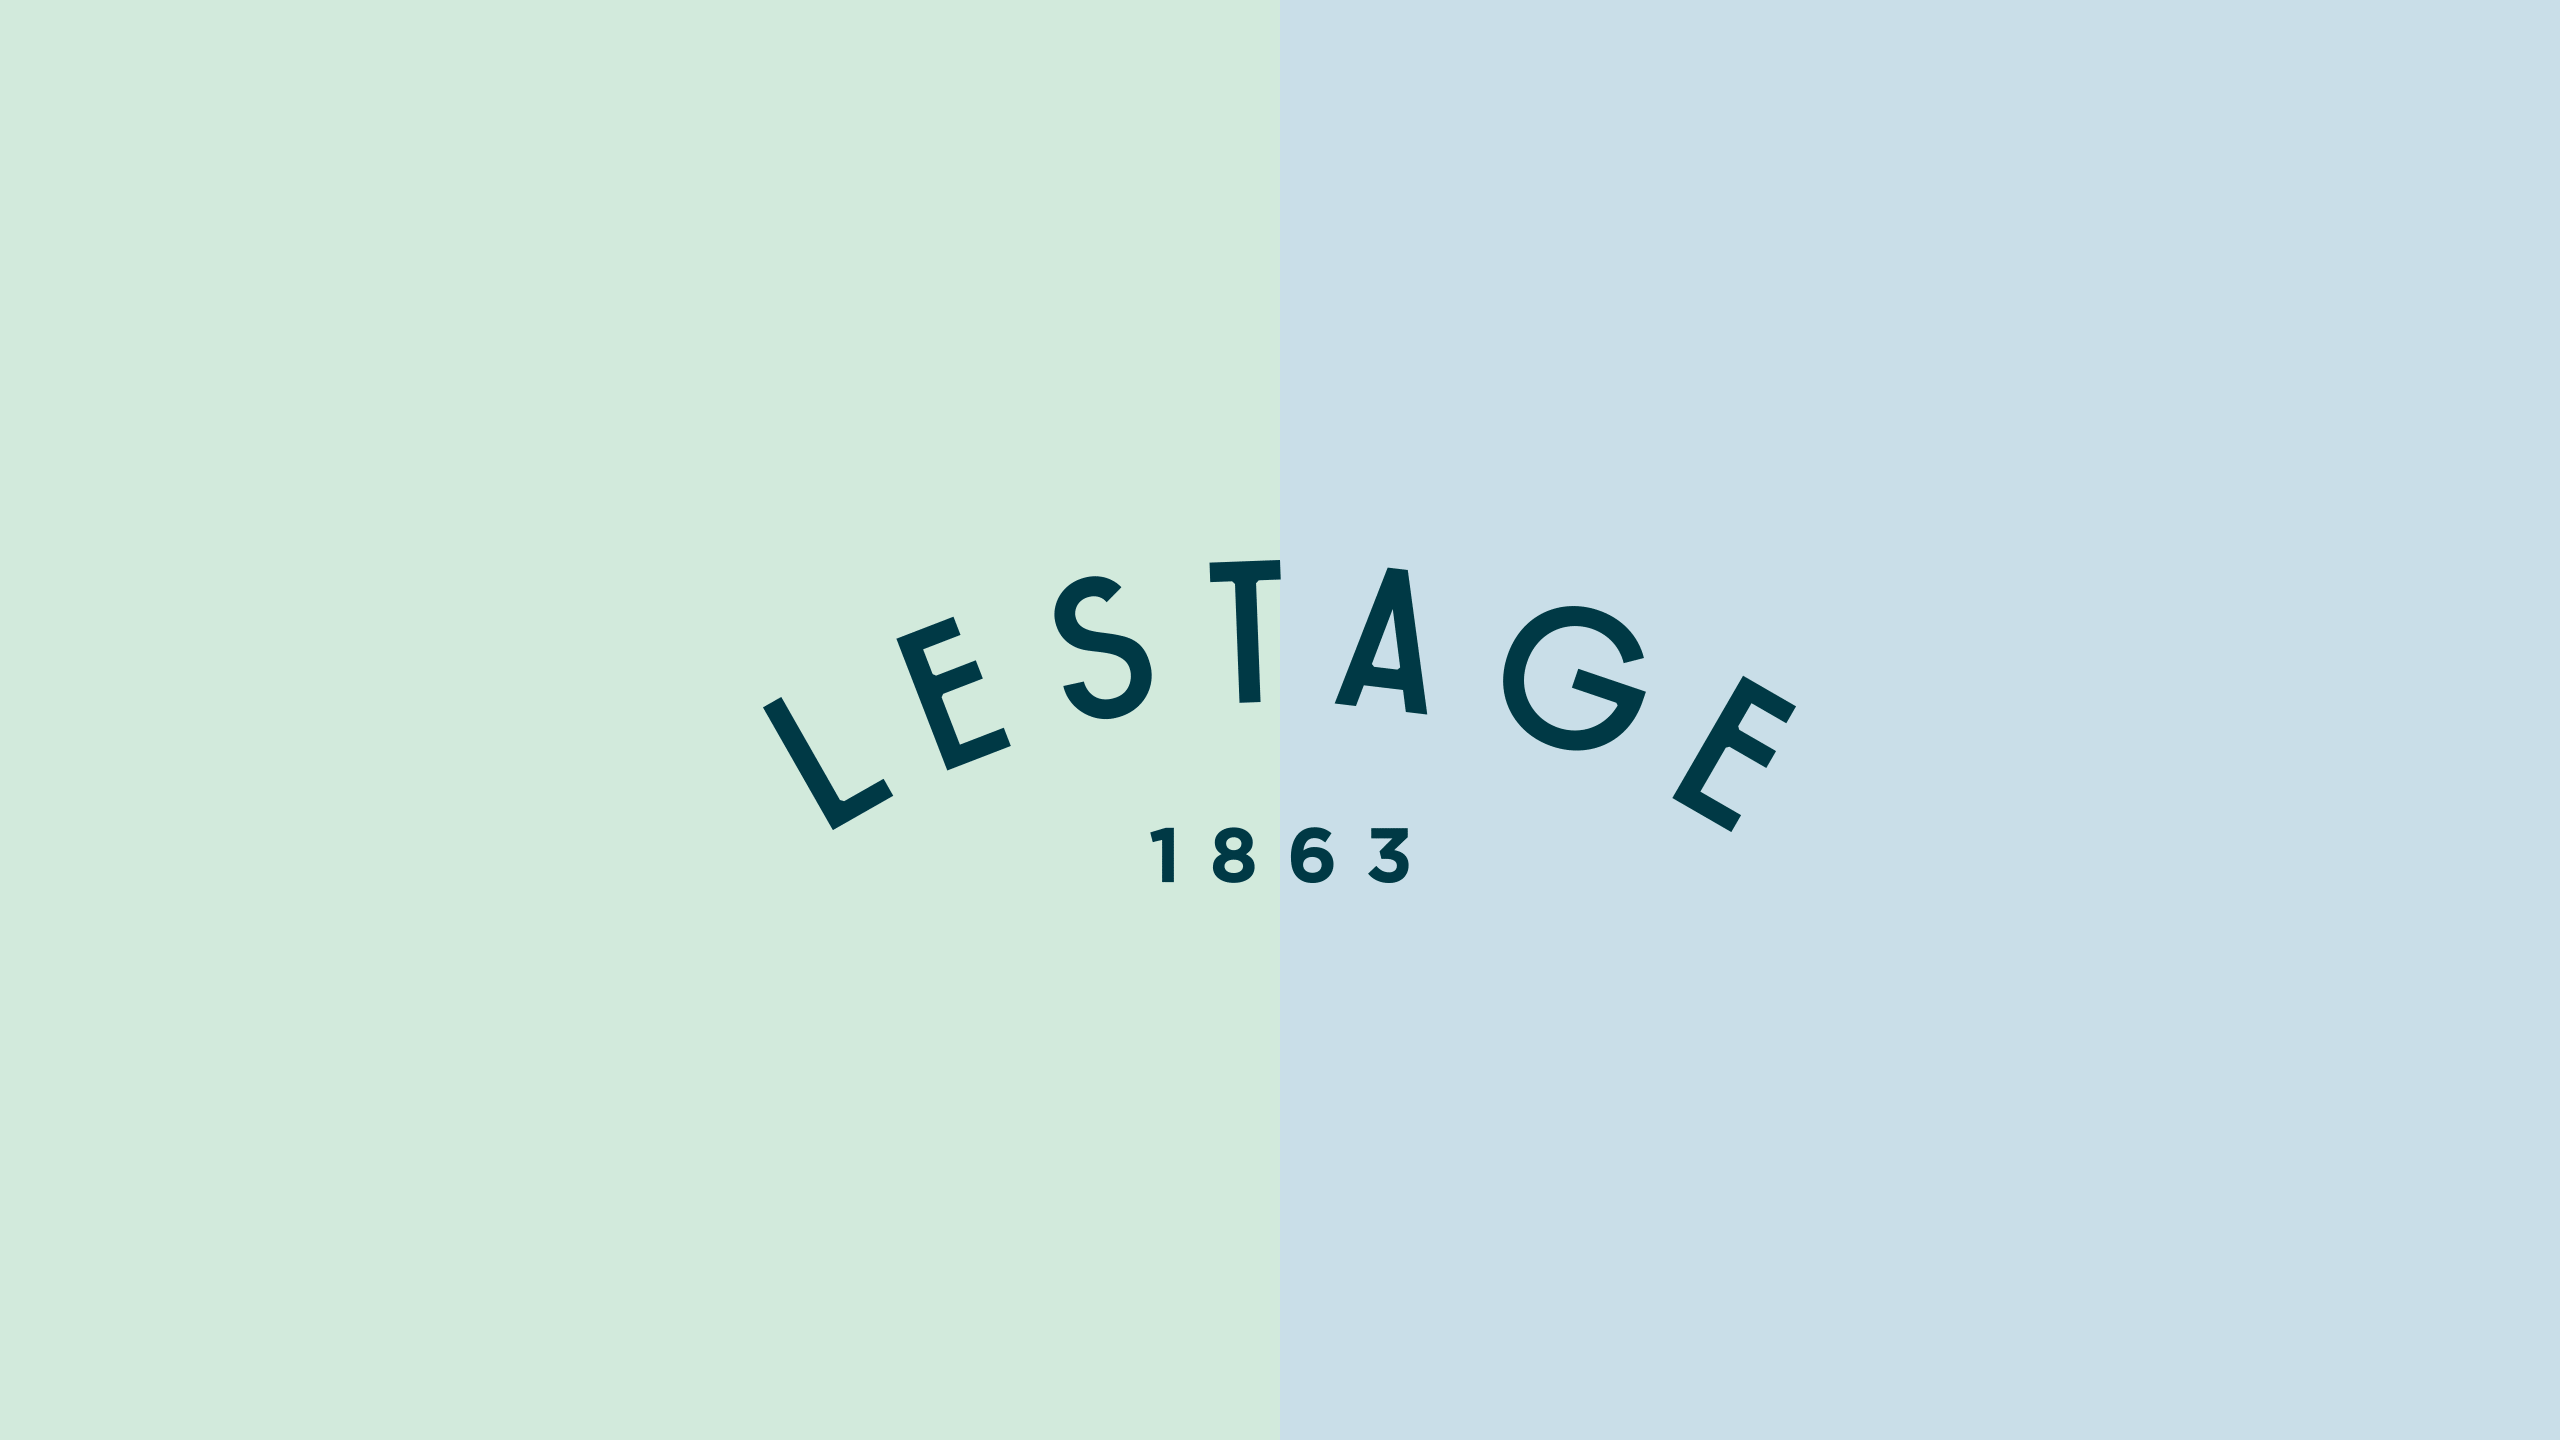 LeStage 1863 mark